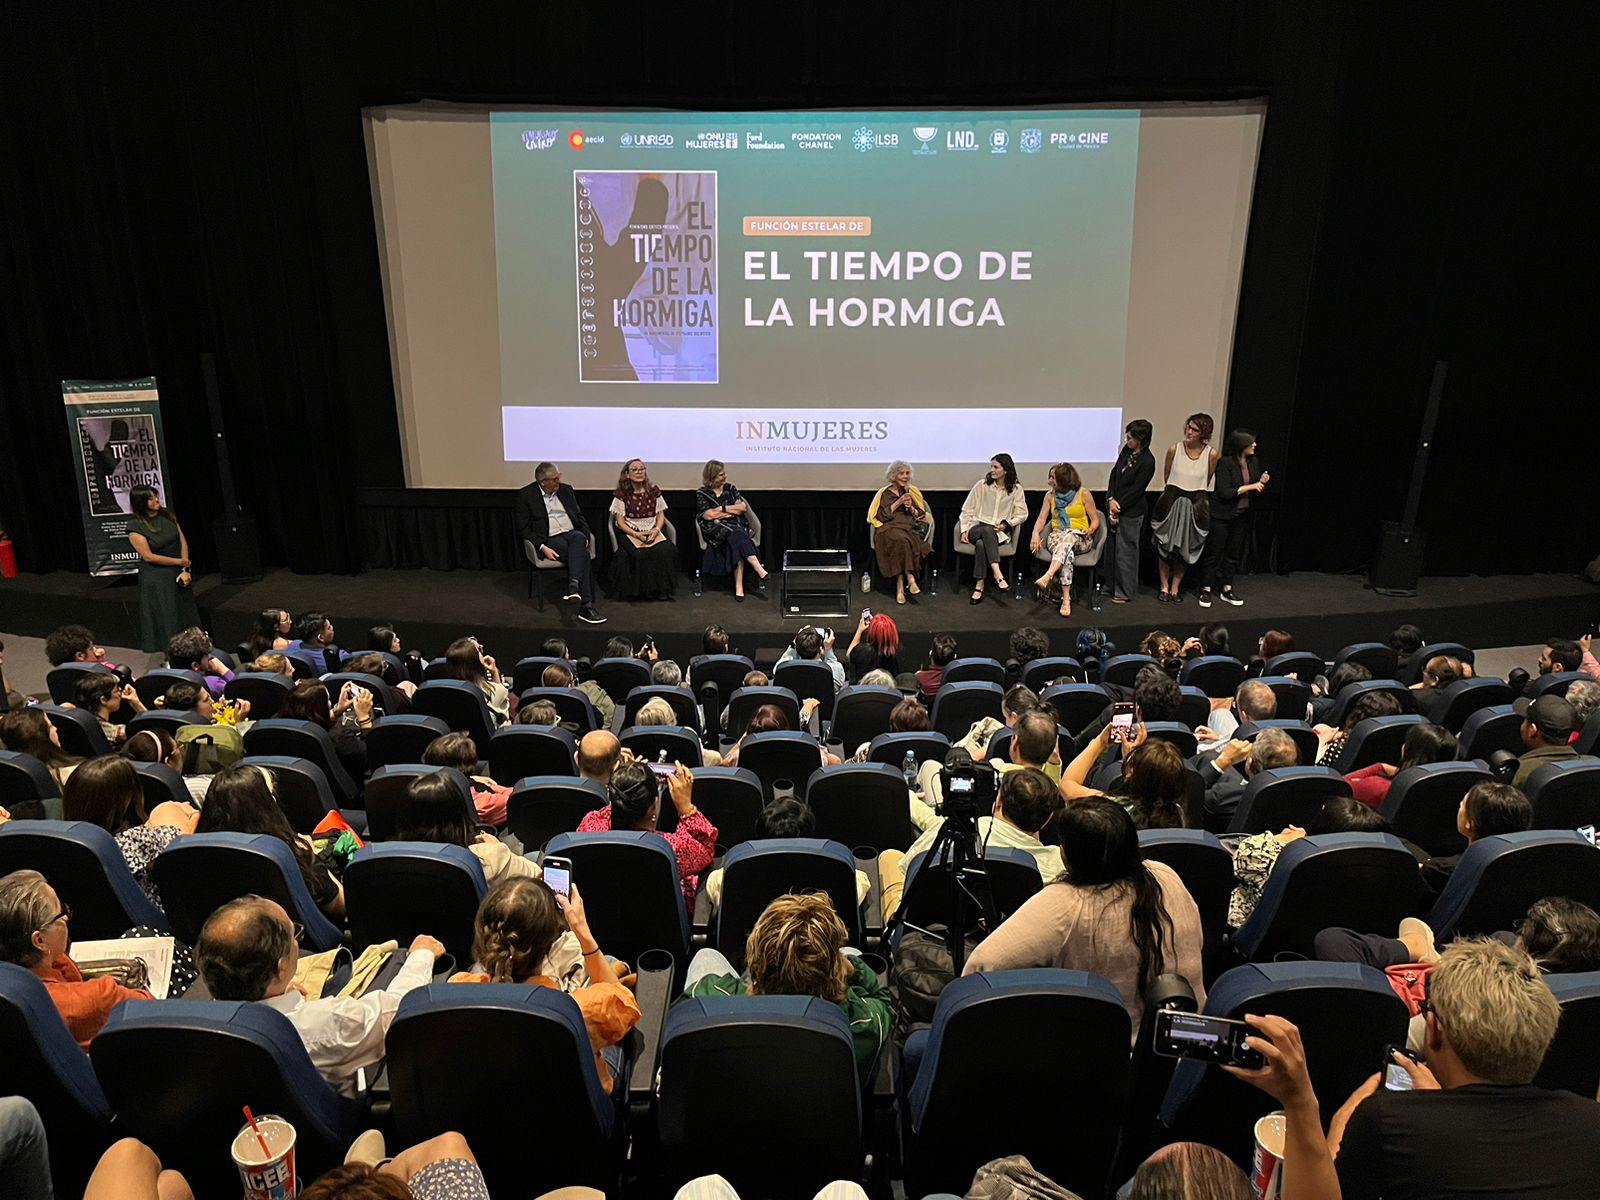 Presentación del documental "El tiempo de la hormiga" en la Cineteca Nacional 